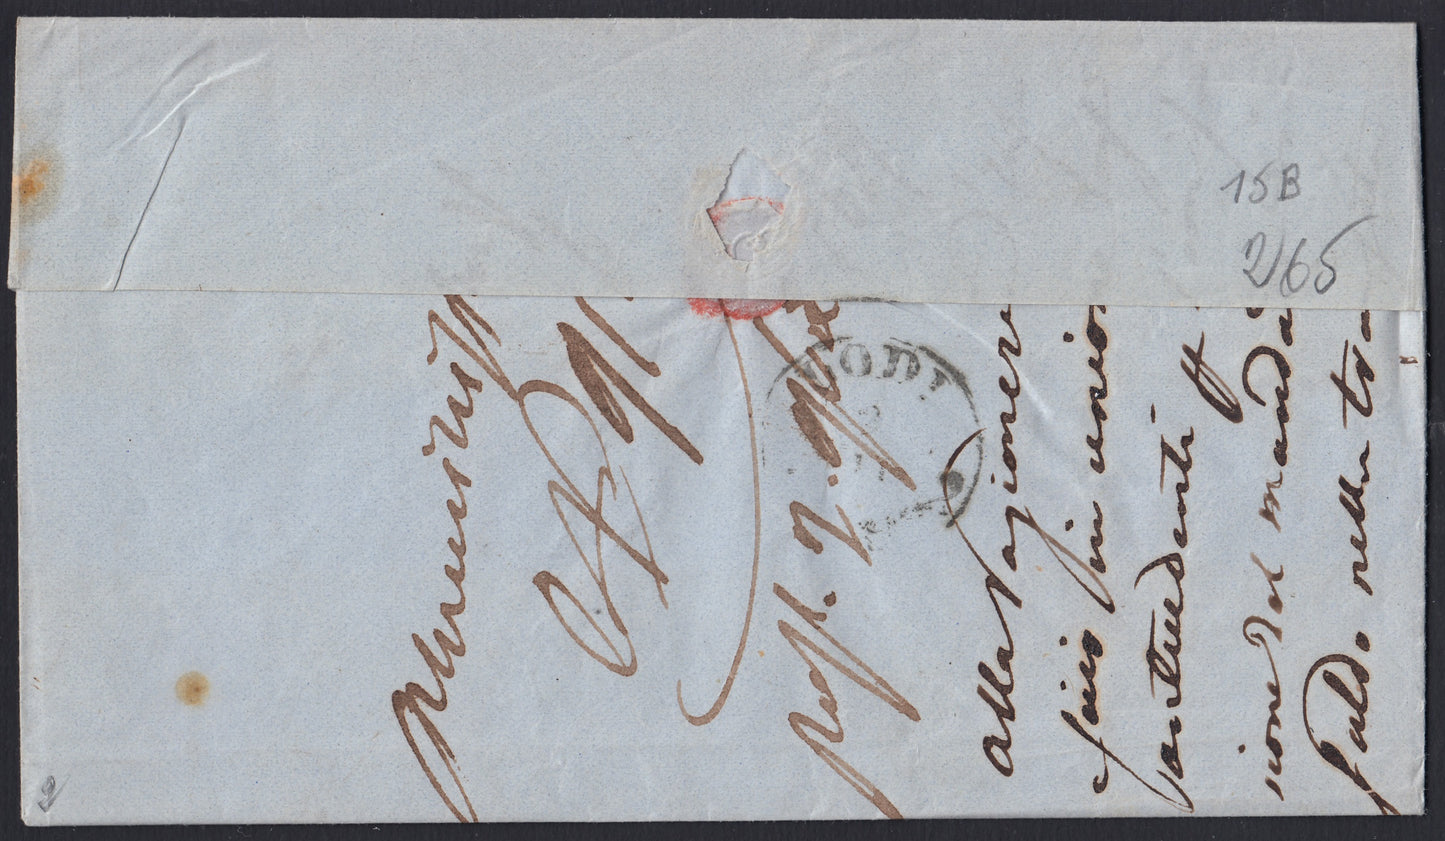 194 - 1859 - Lettera spedita da Milano per Lodi 1/11/59, affrancata con c. 20 Azzurro scuro I tavola tiratura 1859 (15B)